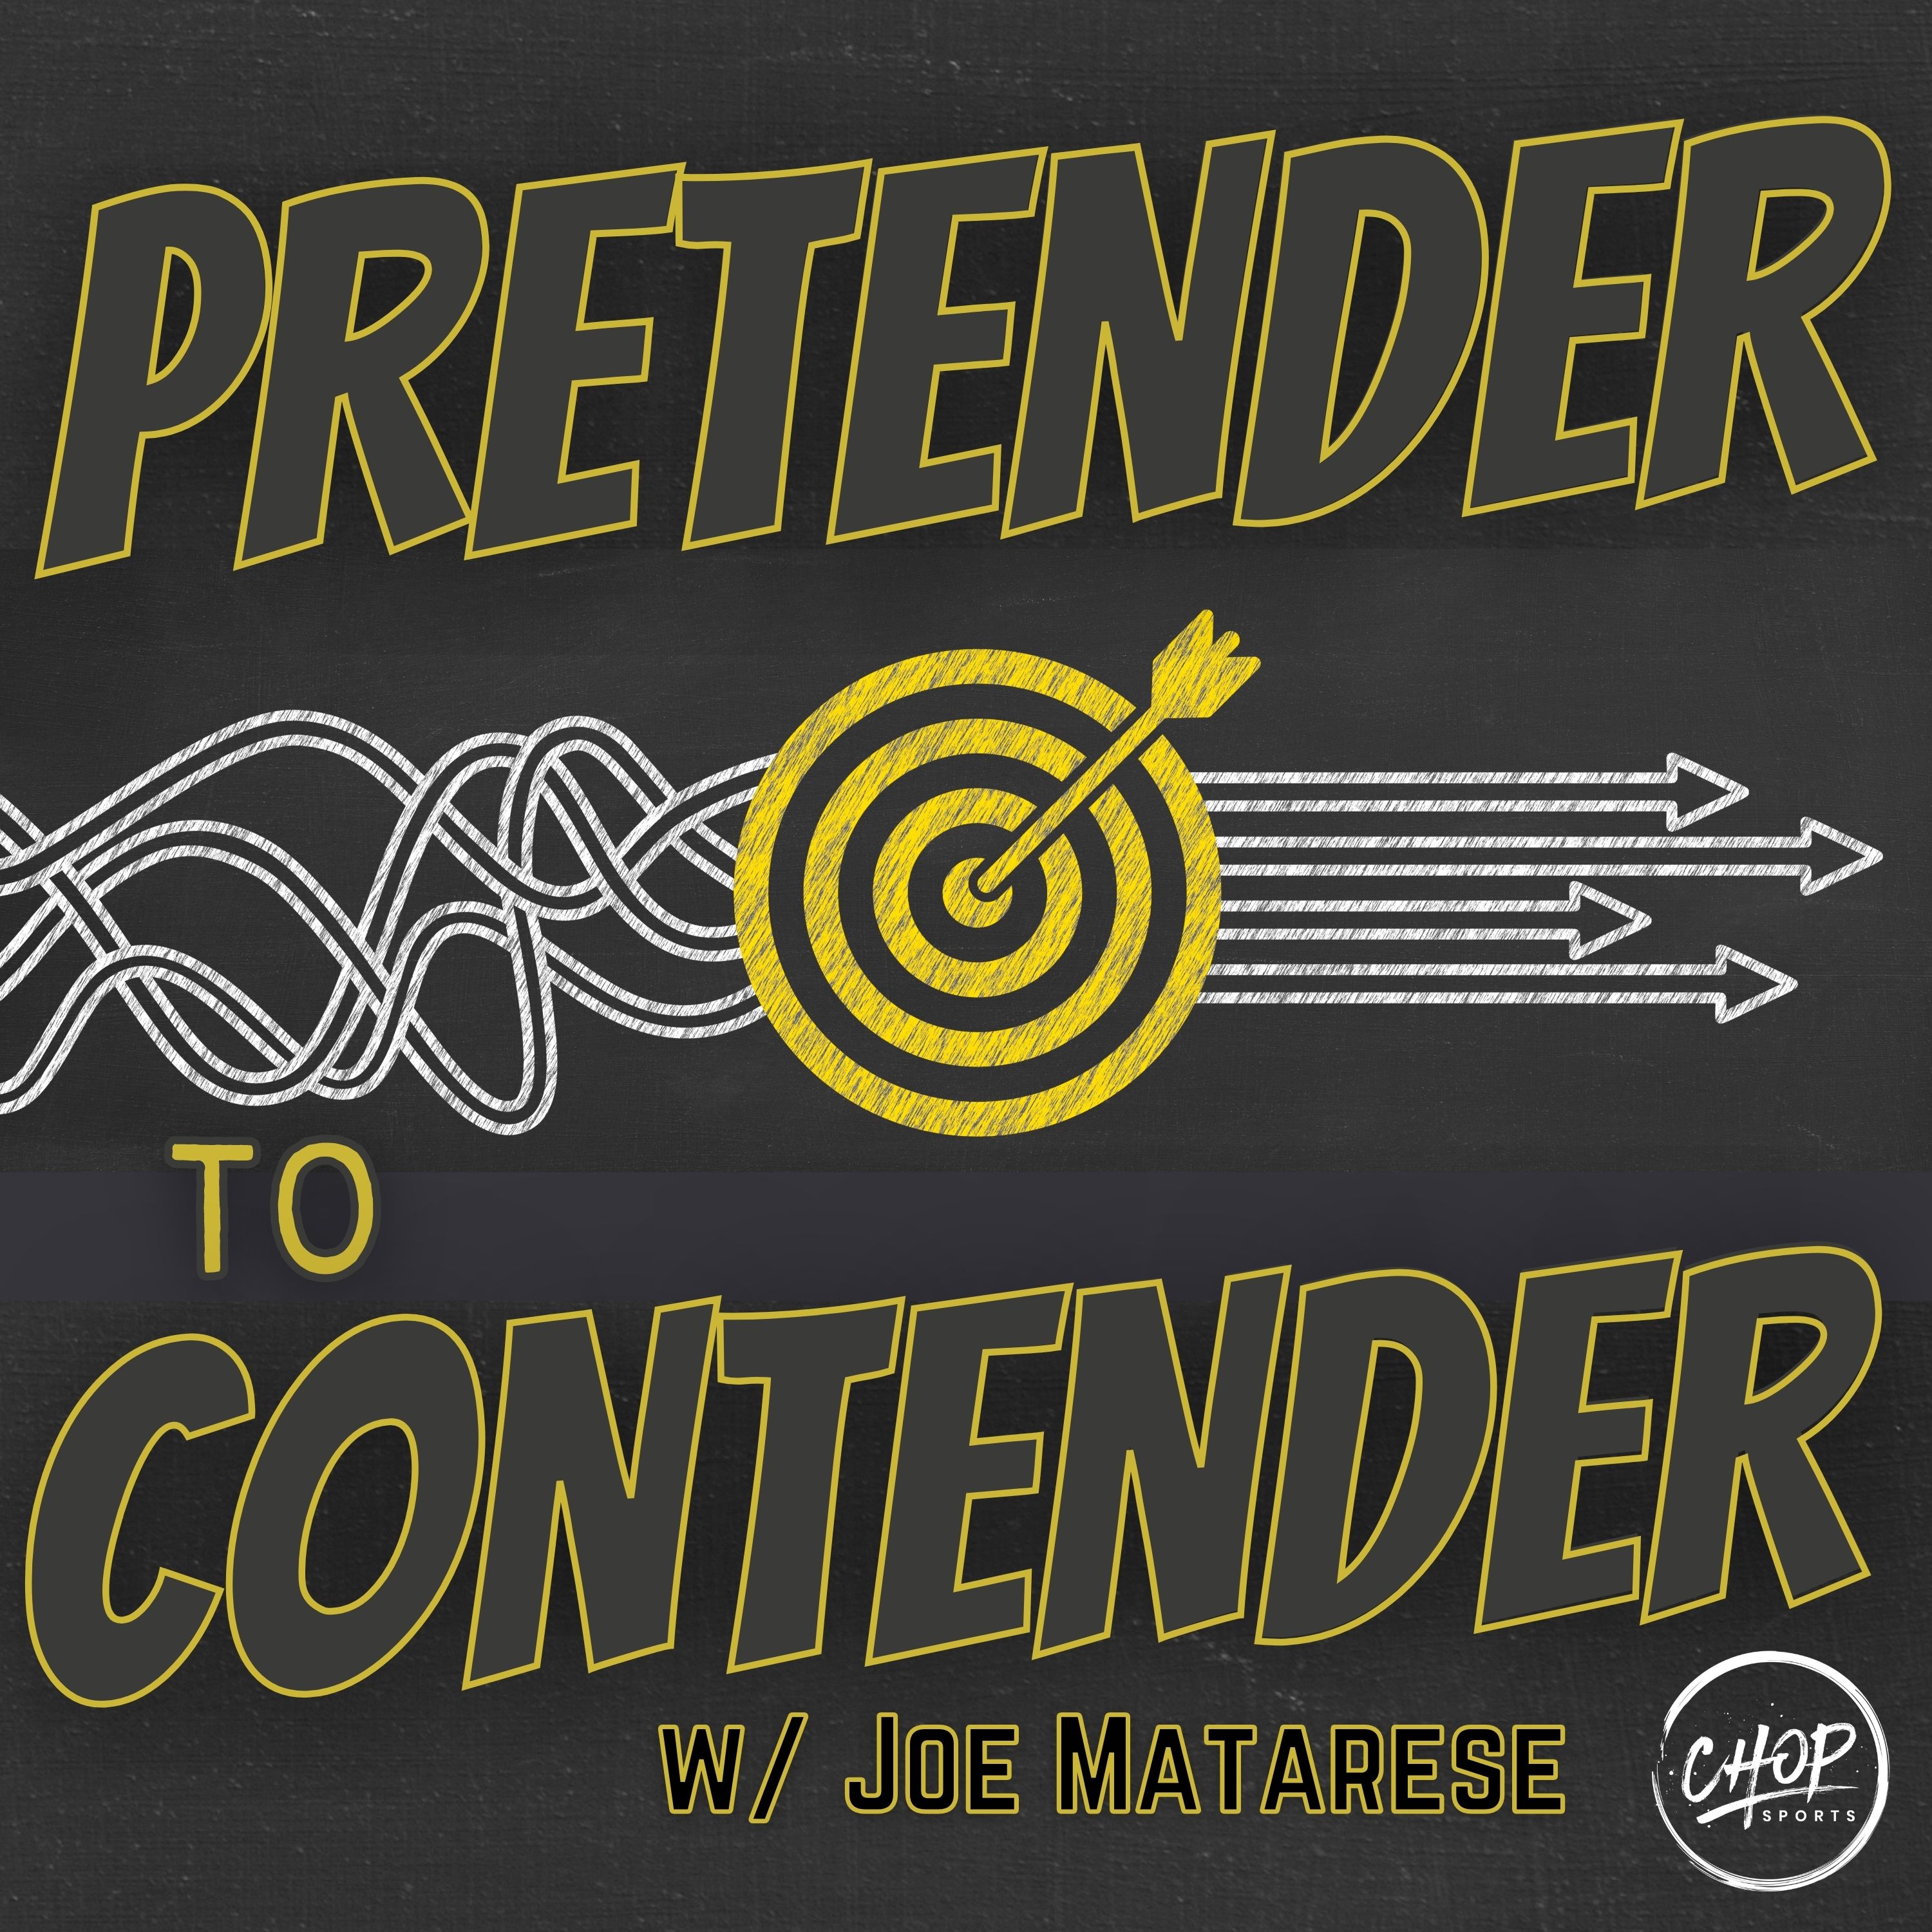 Artwork for podcast Pretender To Contender